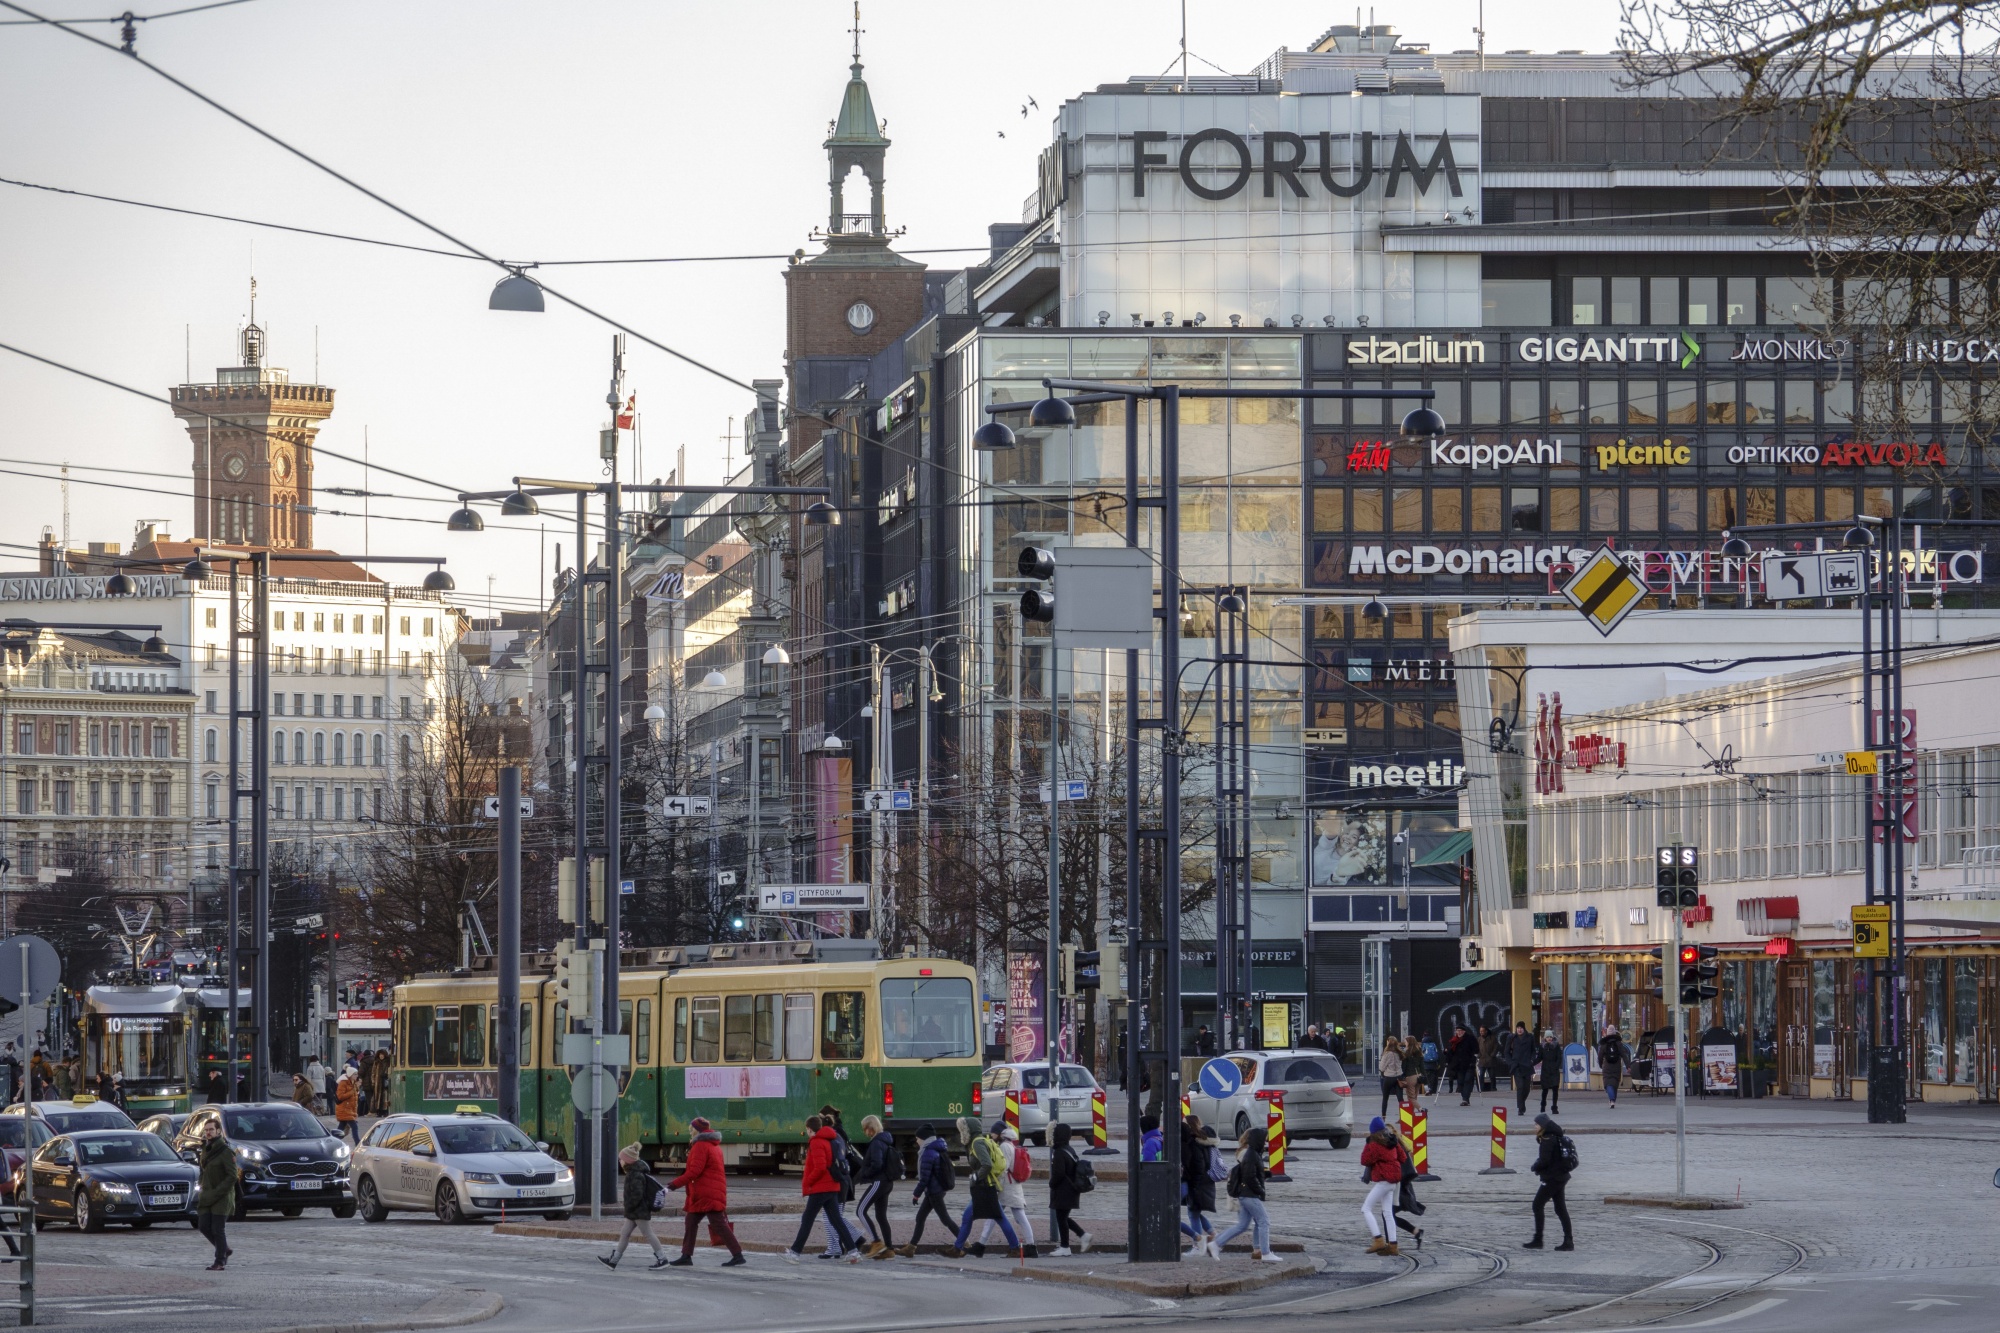 Pedestrians cross tramlines in near the Forum shopping center in Helsinki.